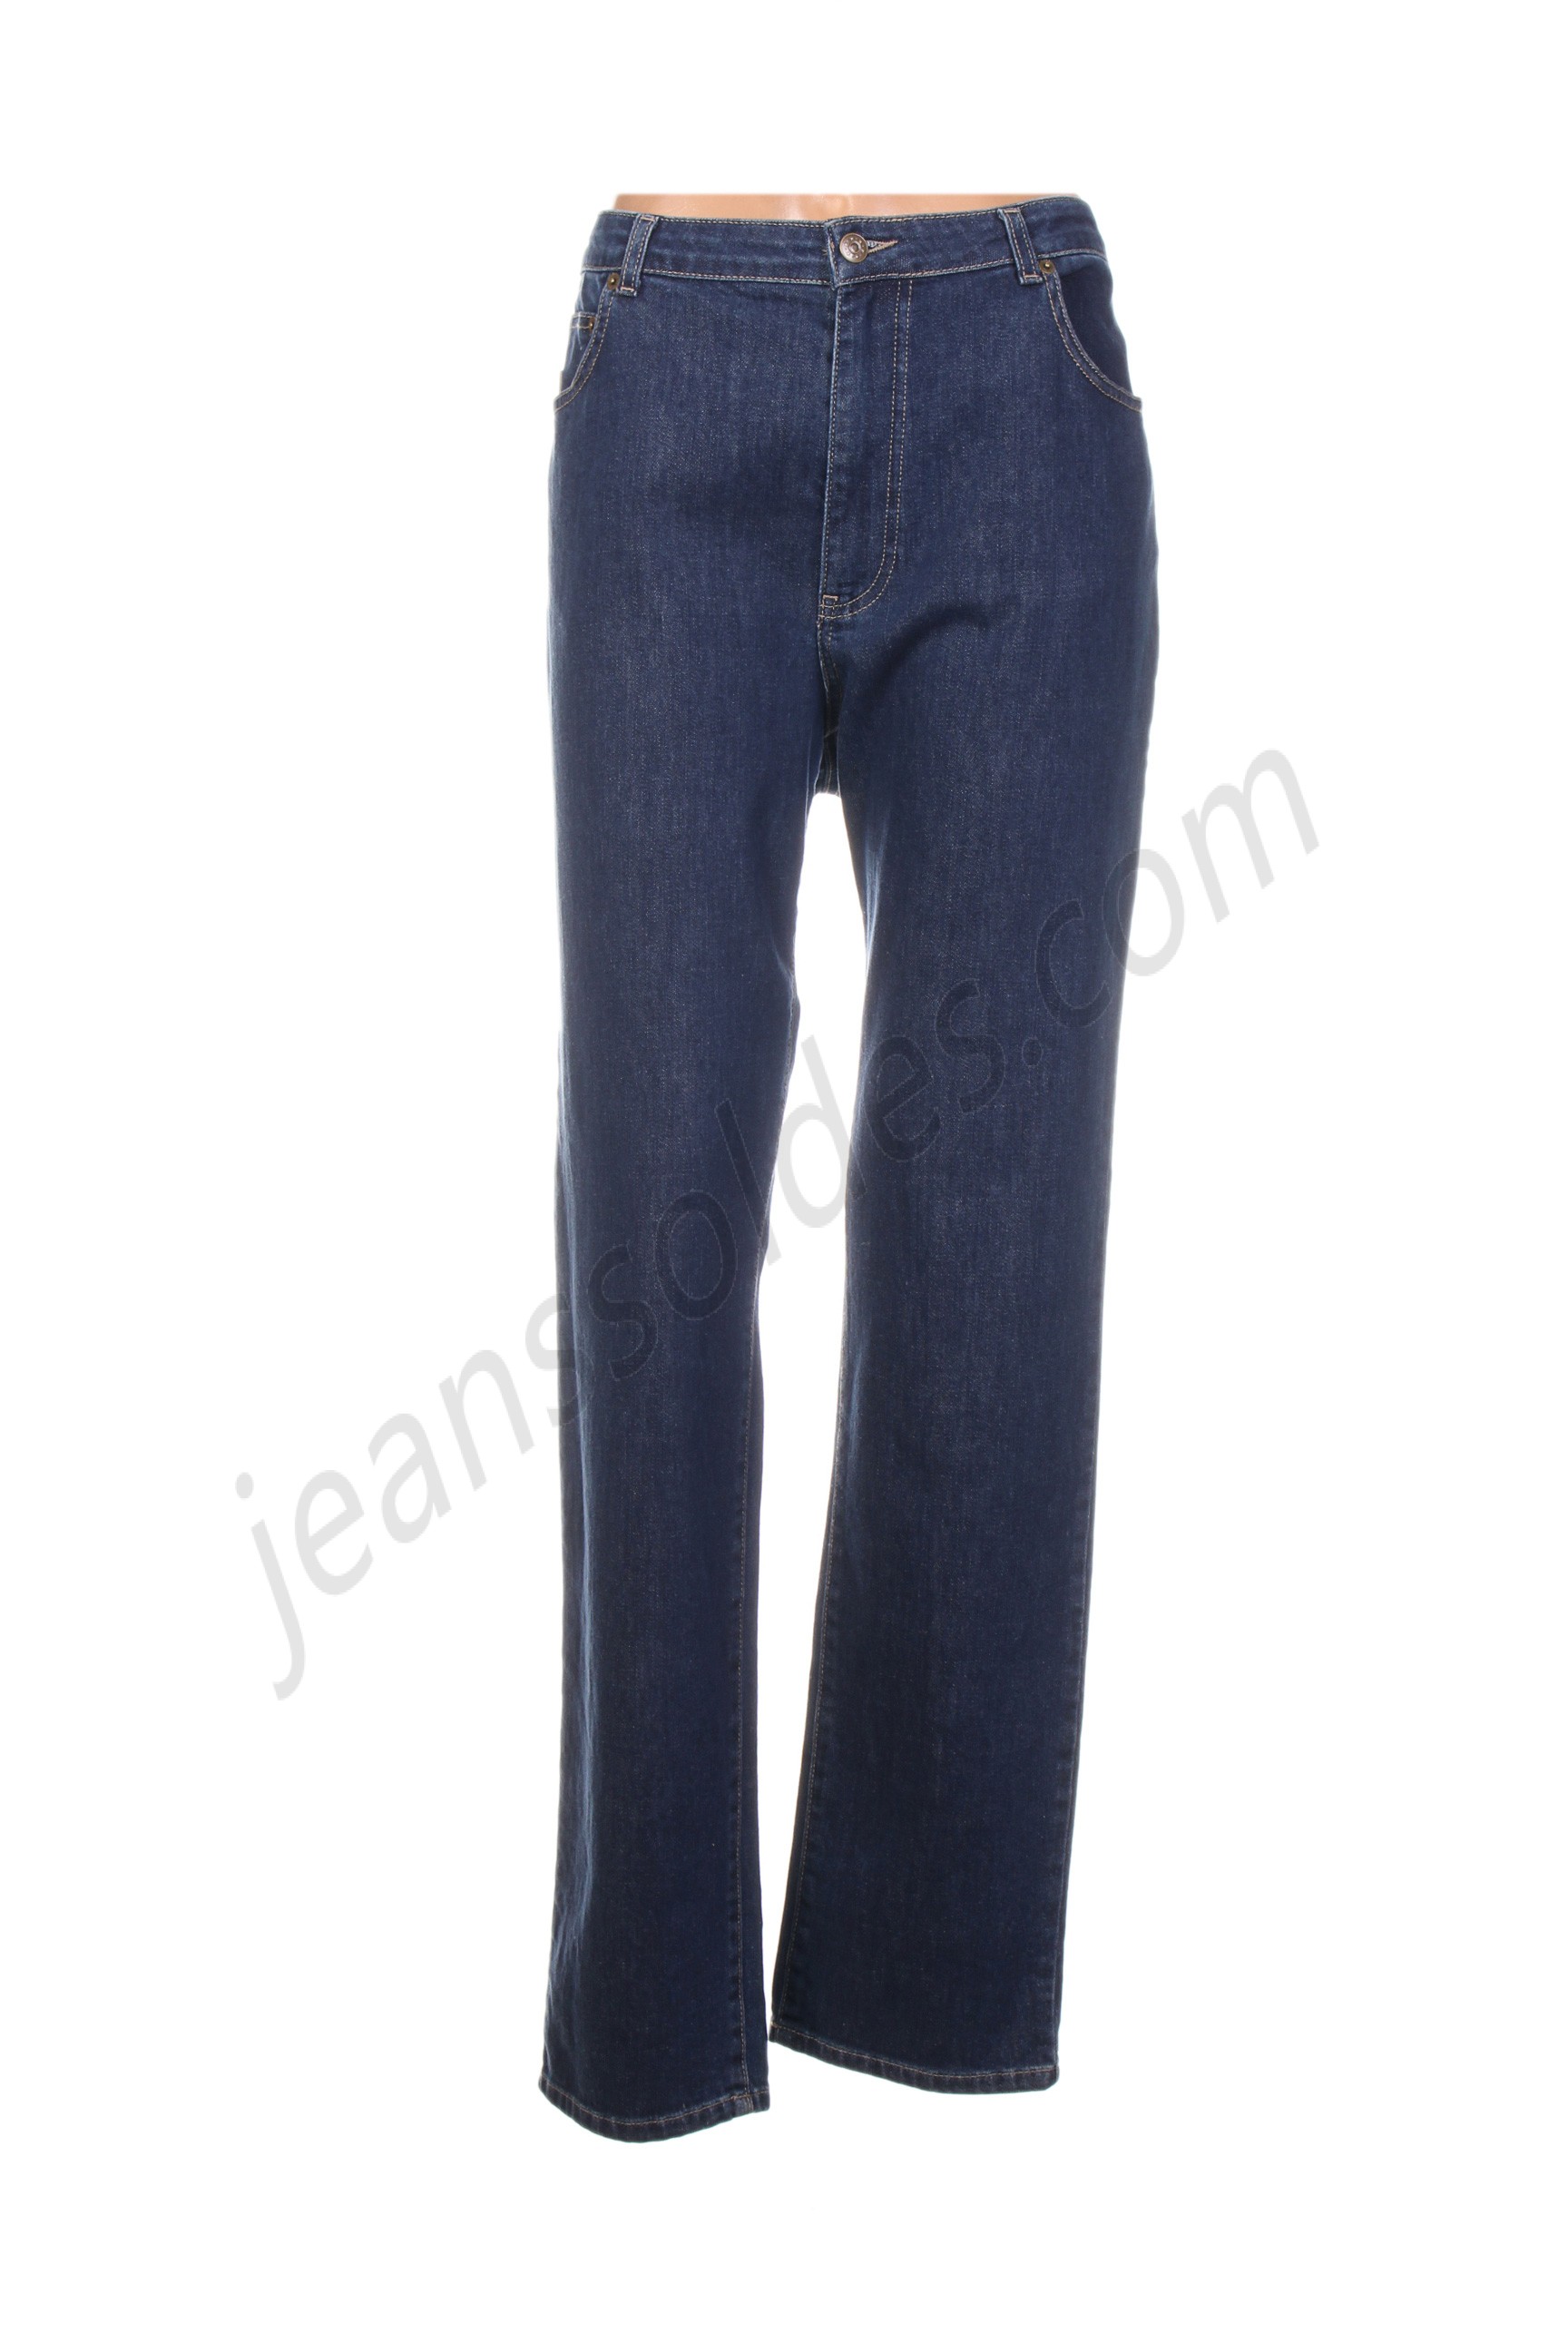 jean gabriel-Jeans coupe slim prix d’amis - jean gabriel-Jeans coupe slim prix d’amis